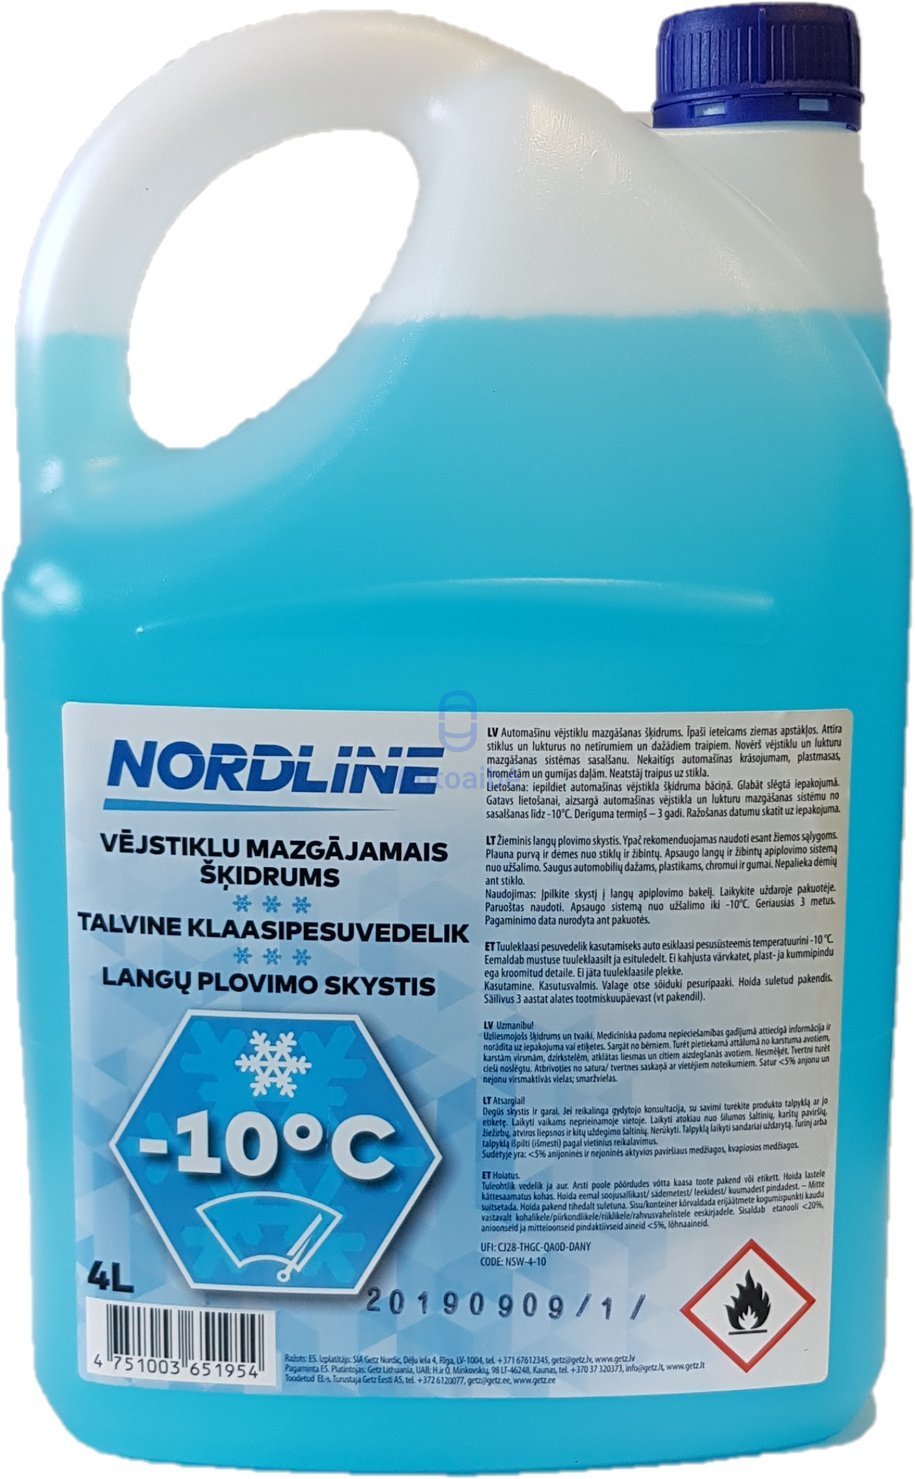 Žieminis langų plovimo skystis NORDLINE (Žaliosios citrinos kvapo, be metanolio), -10°C, 4 l